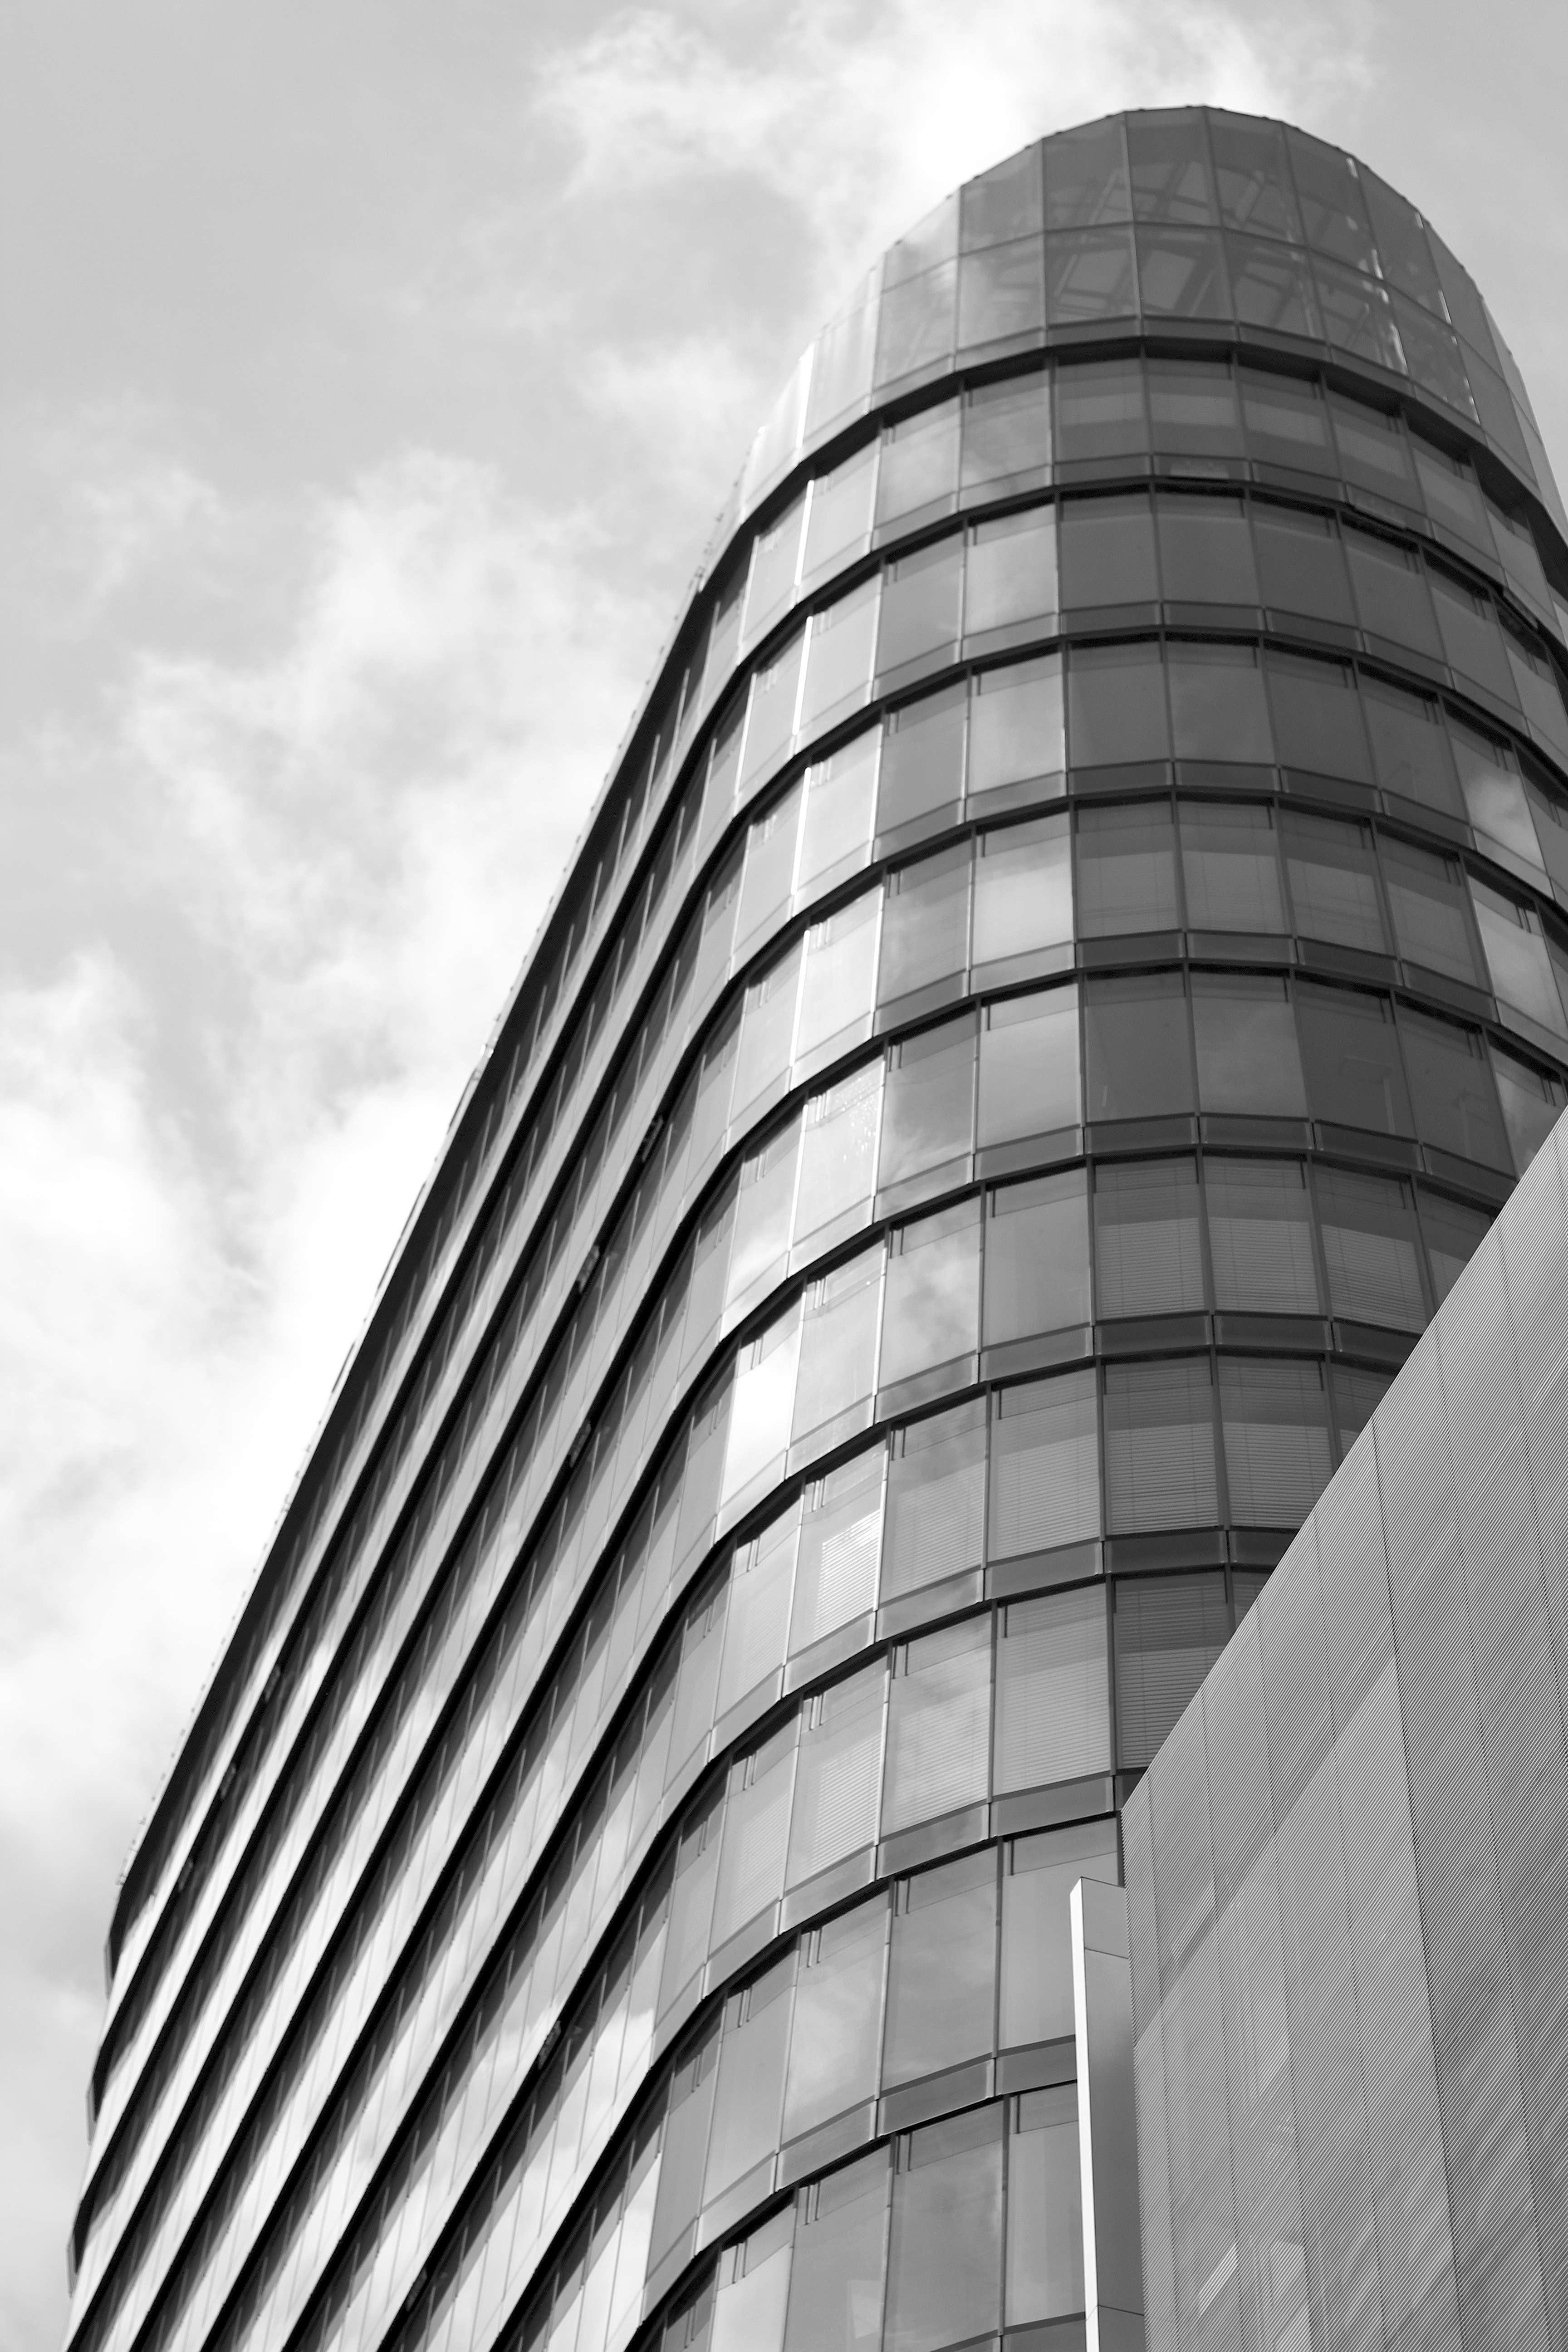 Von Murphy / Jahn, Chicago / Berlin. Fertigstellung 2010. 20-geschossiges Bürohochhaus mit insgesamt 75 Meter Höhe.